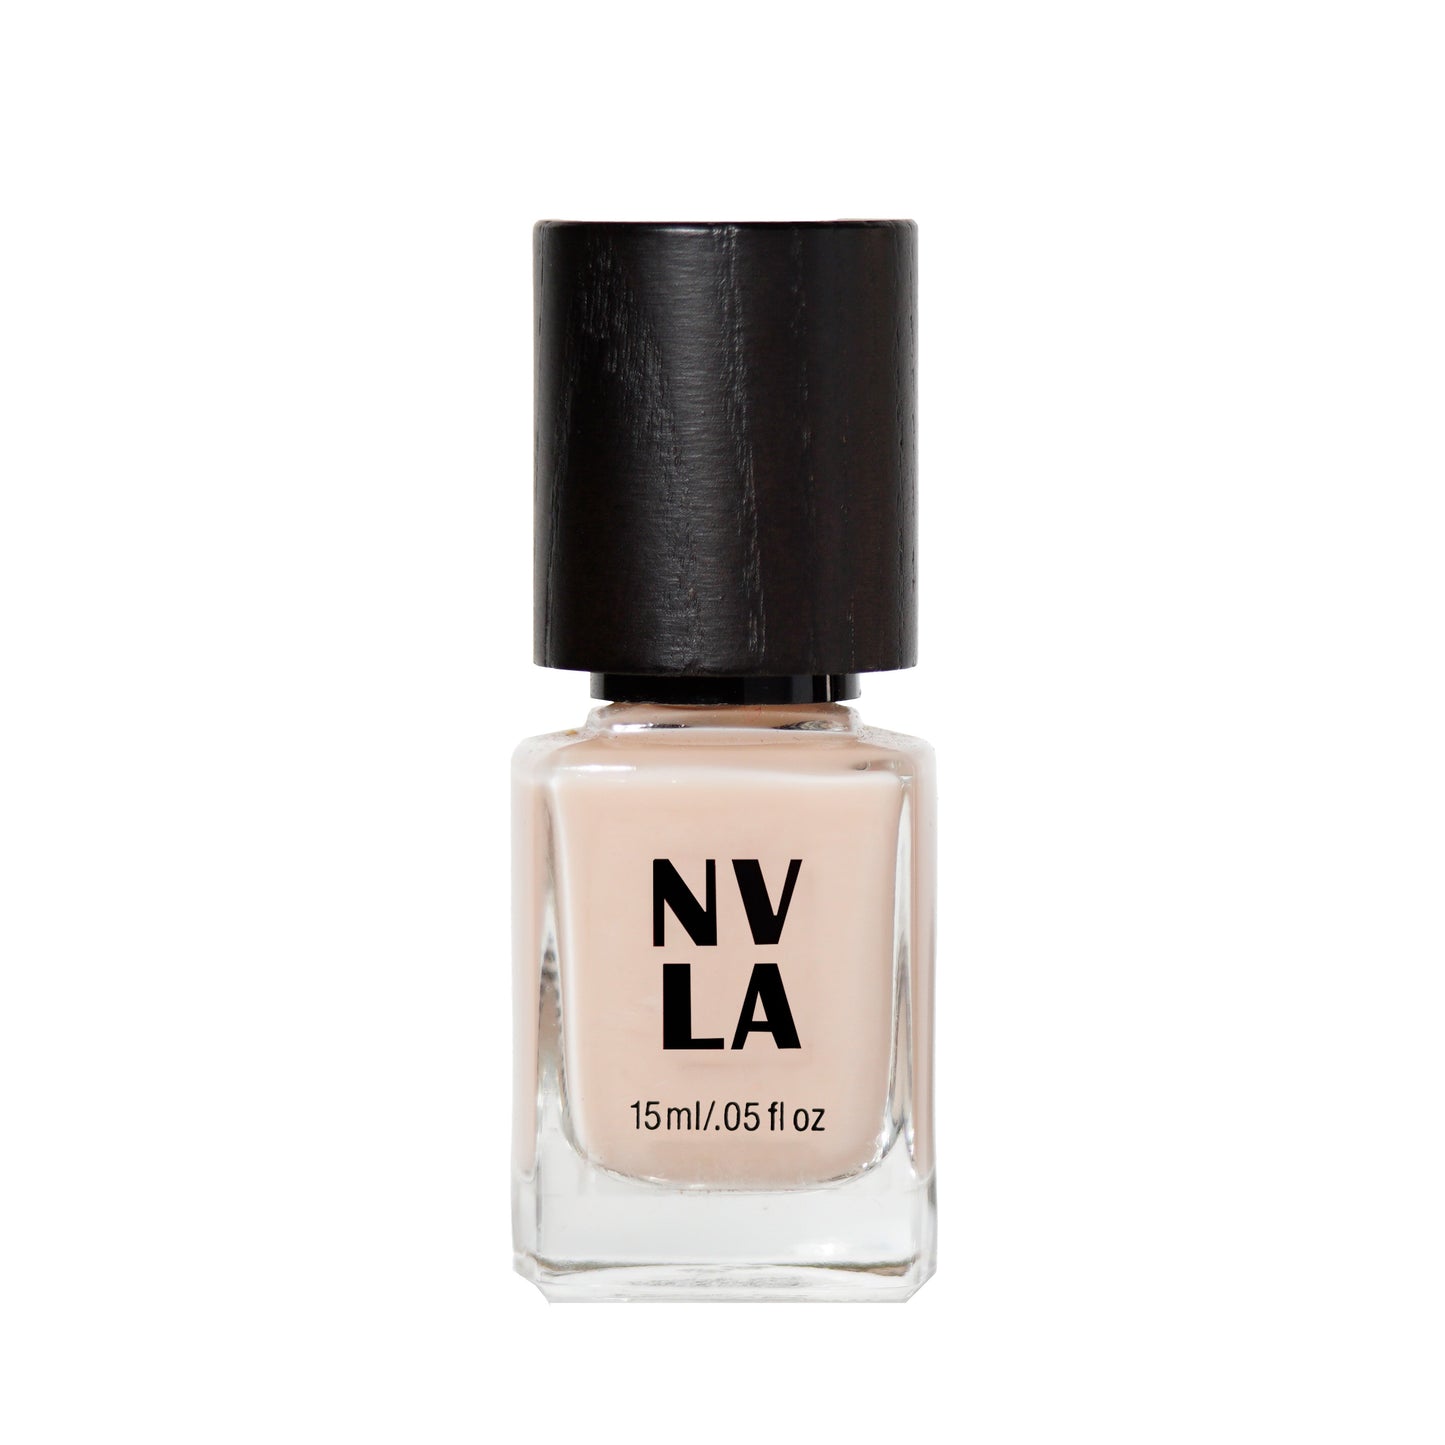 NVLA nail polish Ms. Huffington Pink sheer pink